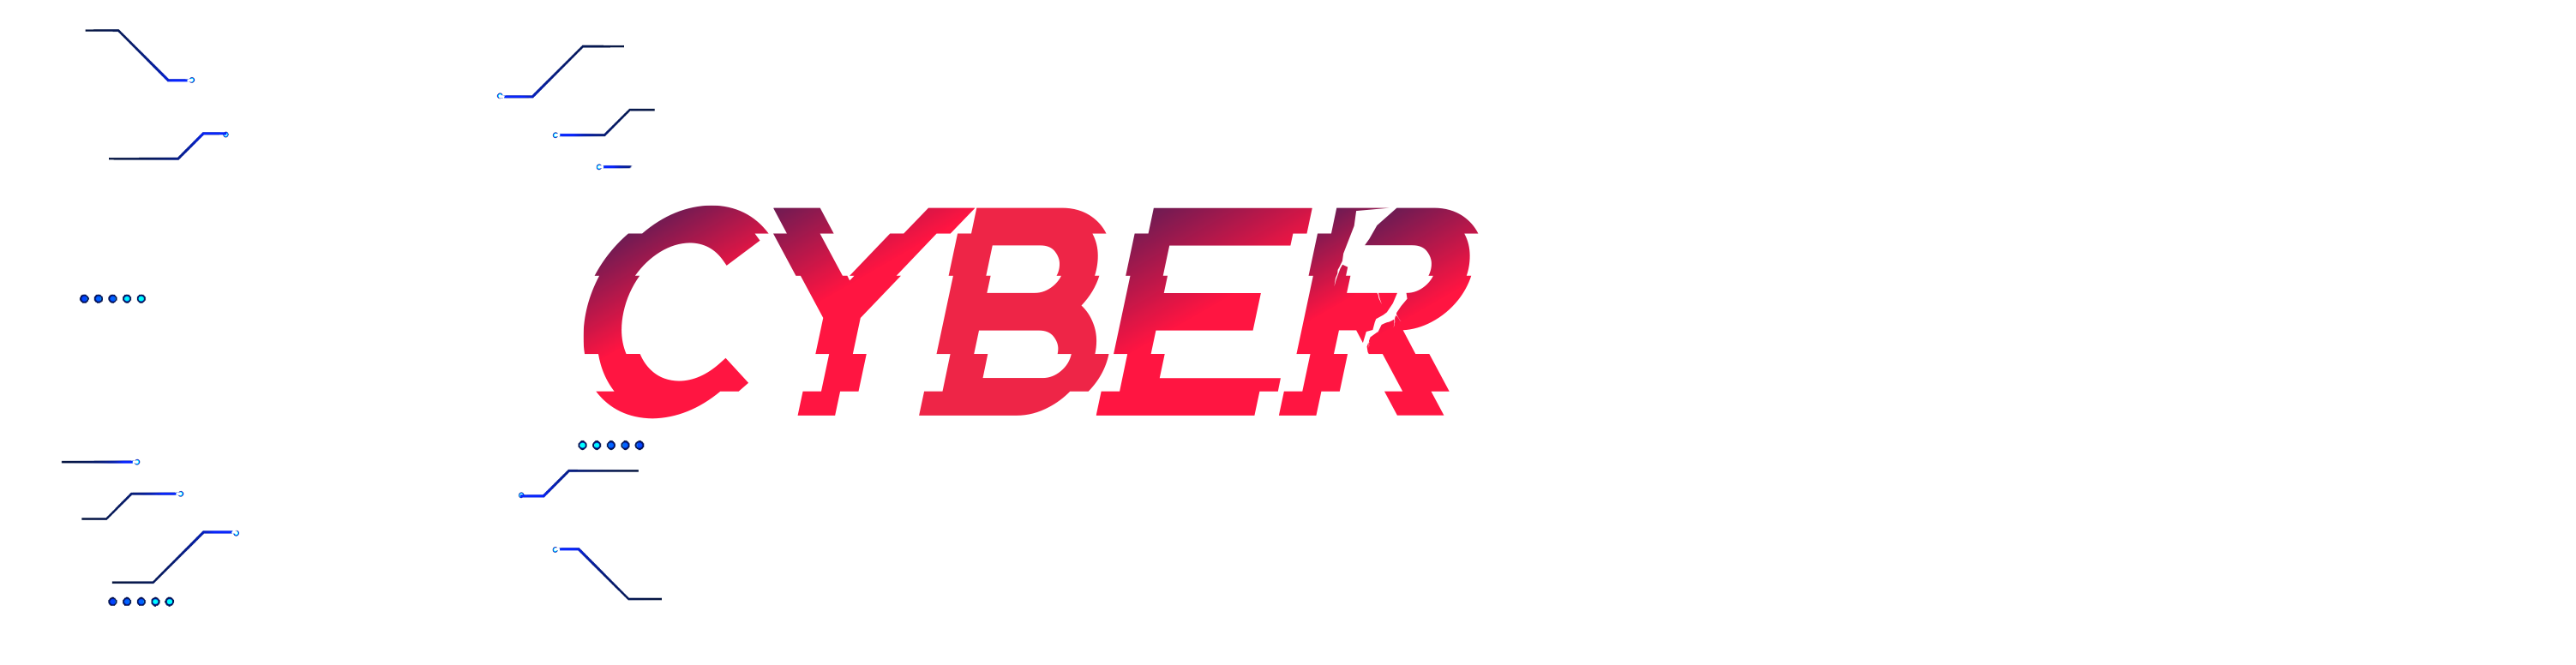 CyberBreach